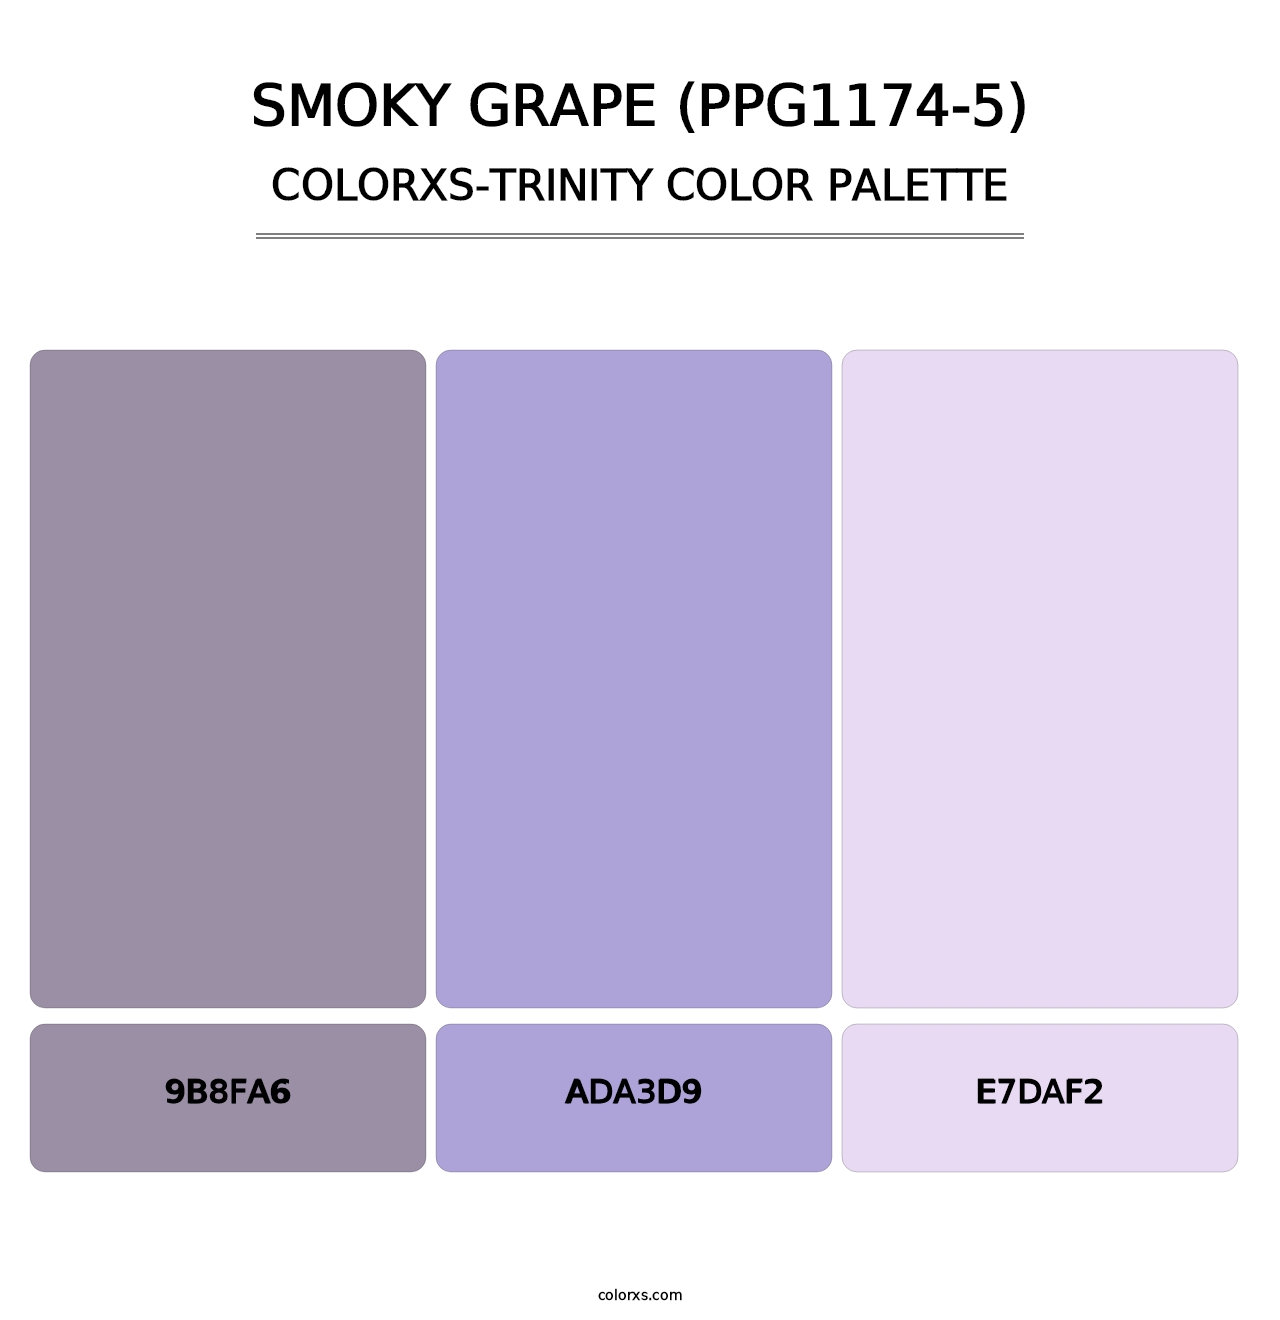 Smoky Grape (PPG1174-5) - Colorxs Trinity Palette